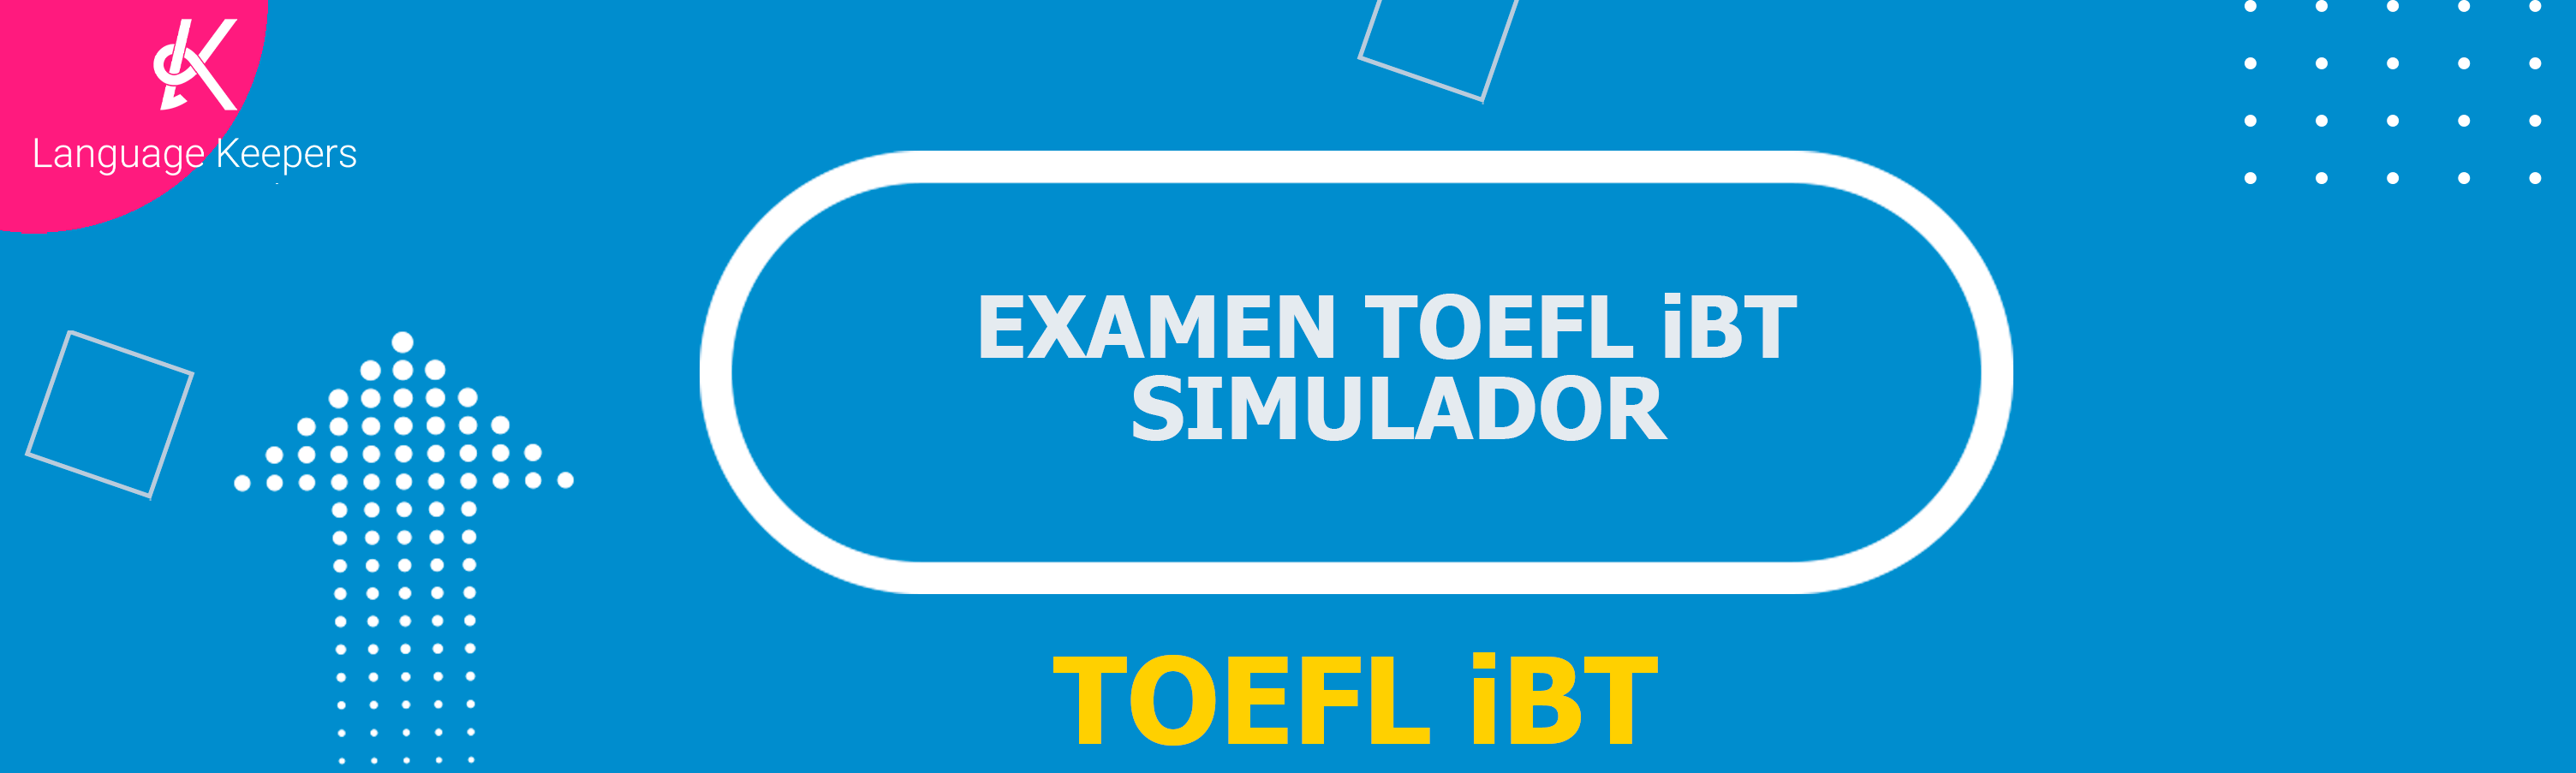 EXAMEN TOEFL iBT SIMULADOR